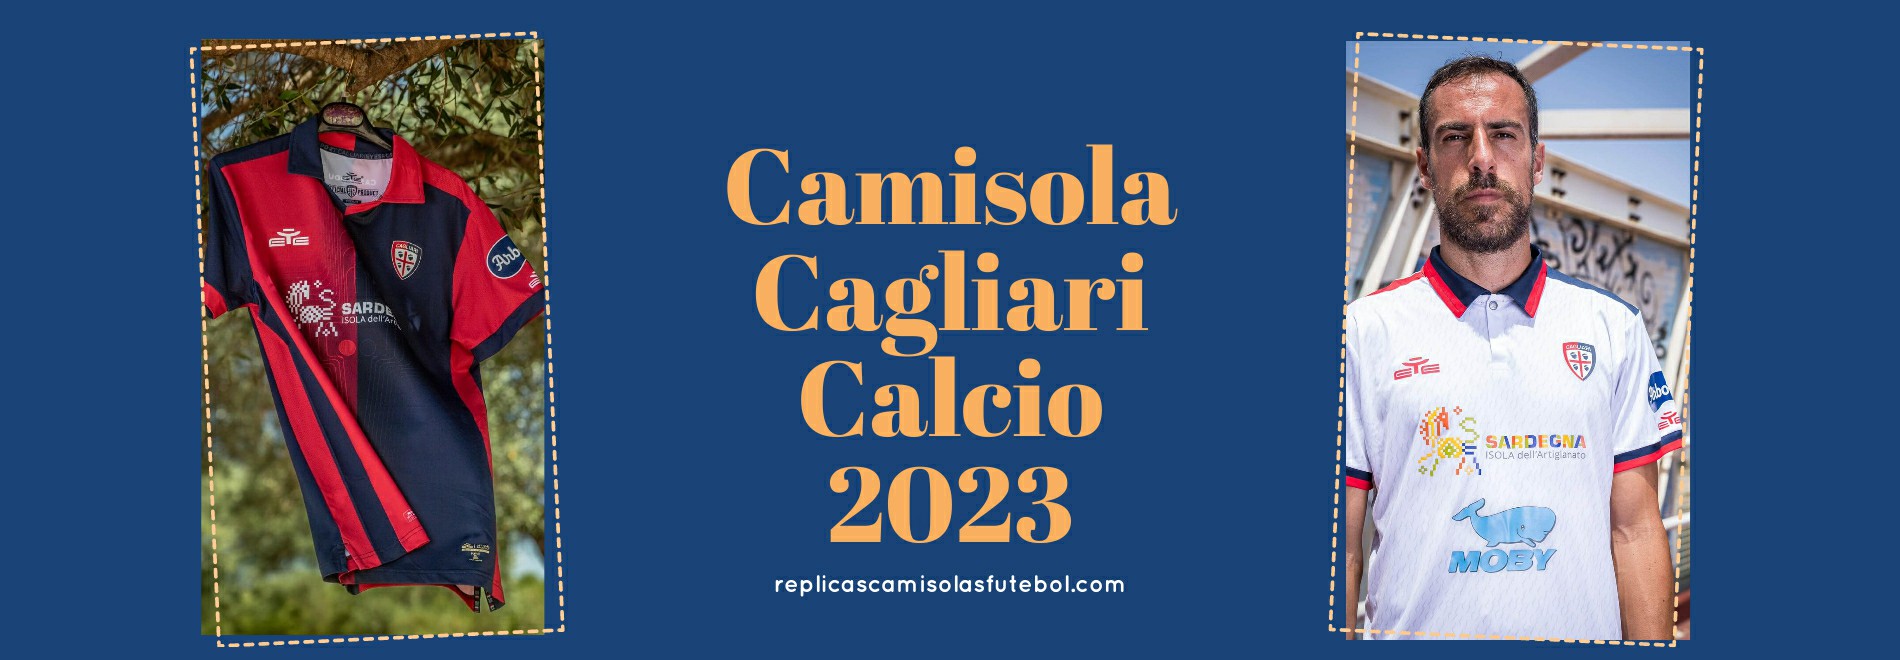 Camisola Cagliari Calcio 2023-2024